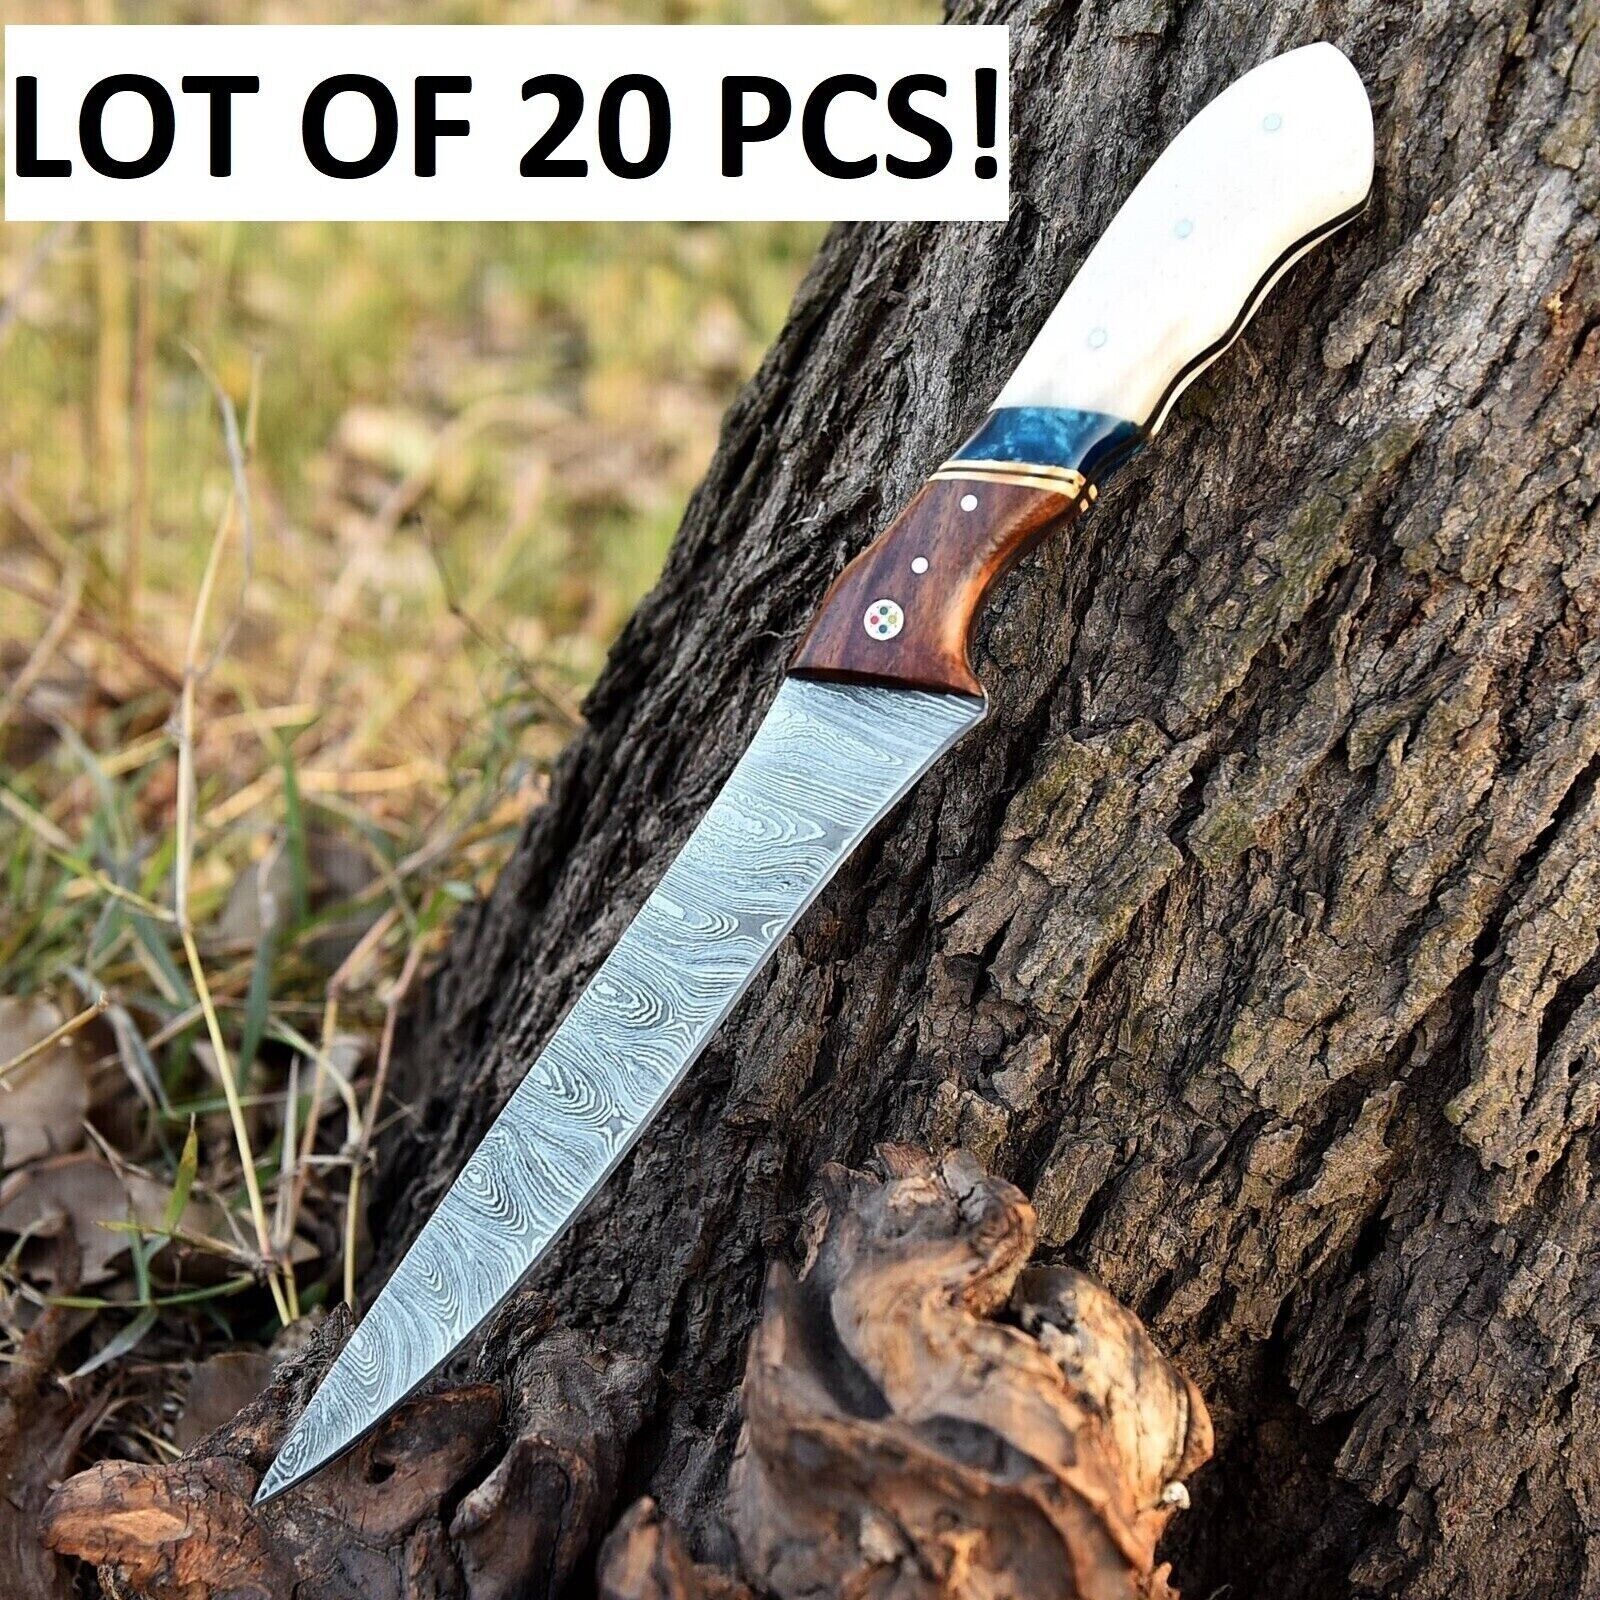 20 PCS LOT Handmade DAMASCUS STEEL KNIVES Hunting Fillet BONING SKINNING KNIVES